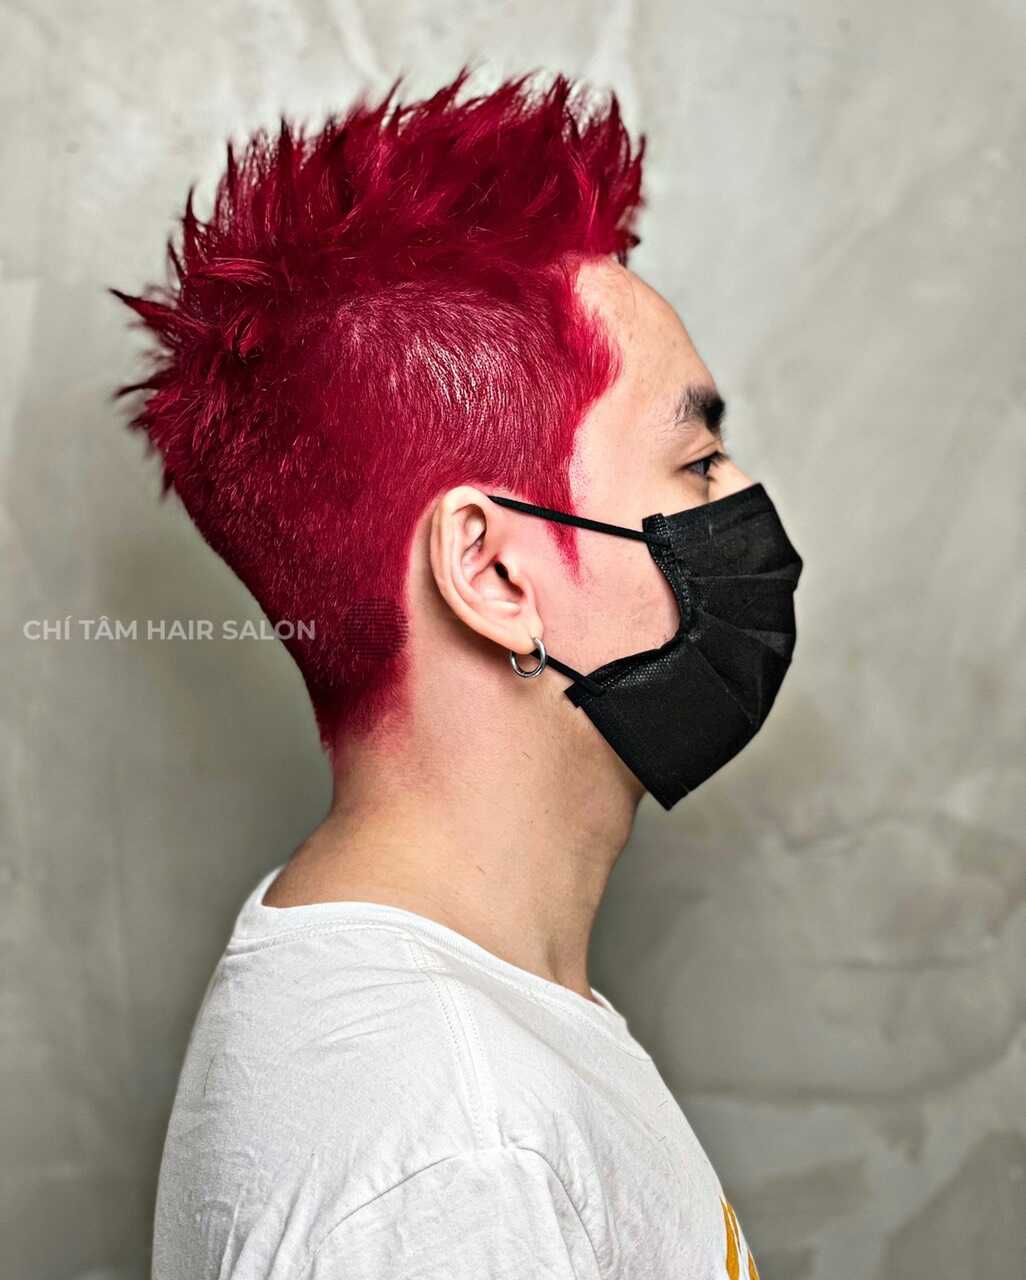 Nhuộm tóc nam đỏ cherry là một lựa chọn táo bạo và sành điệu cho các chàng trai hiện đại. Hãy cùng chiêm ngưỡng hình ảnh đầy màu sắc và cá tính của kiểu nhuộm tóc này để tìm thêm sự trẻ trung và phong cách cho bản thân.